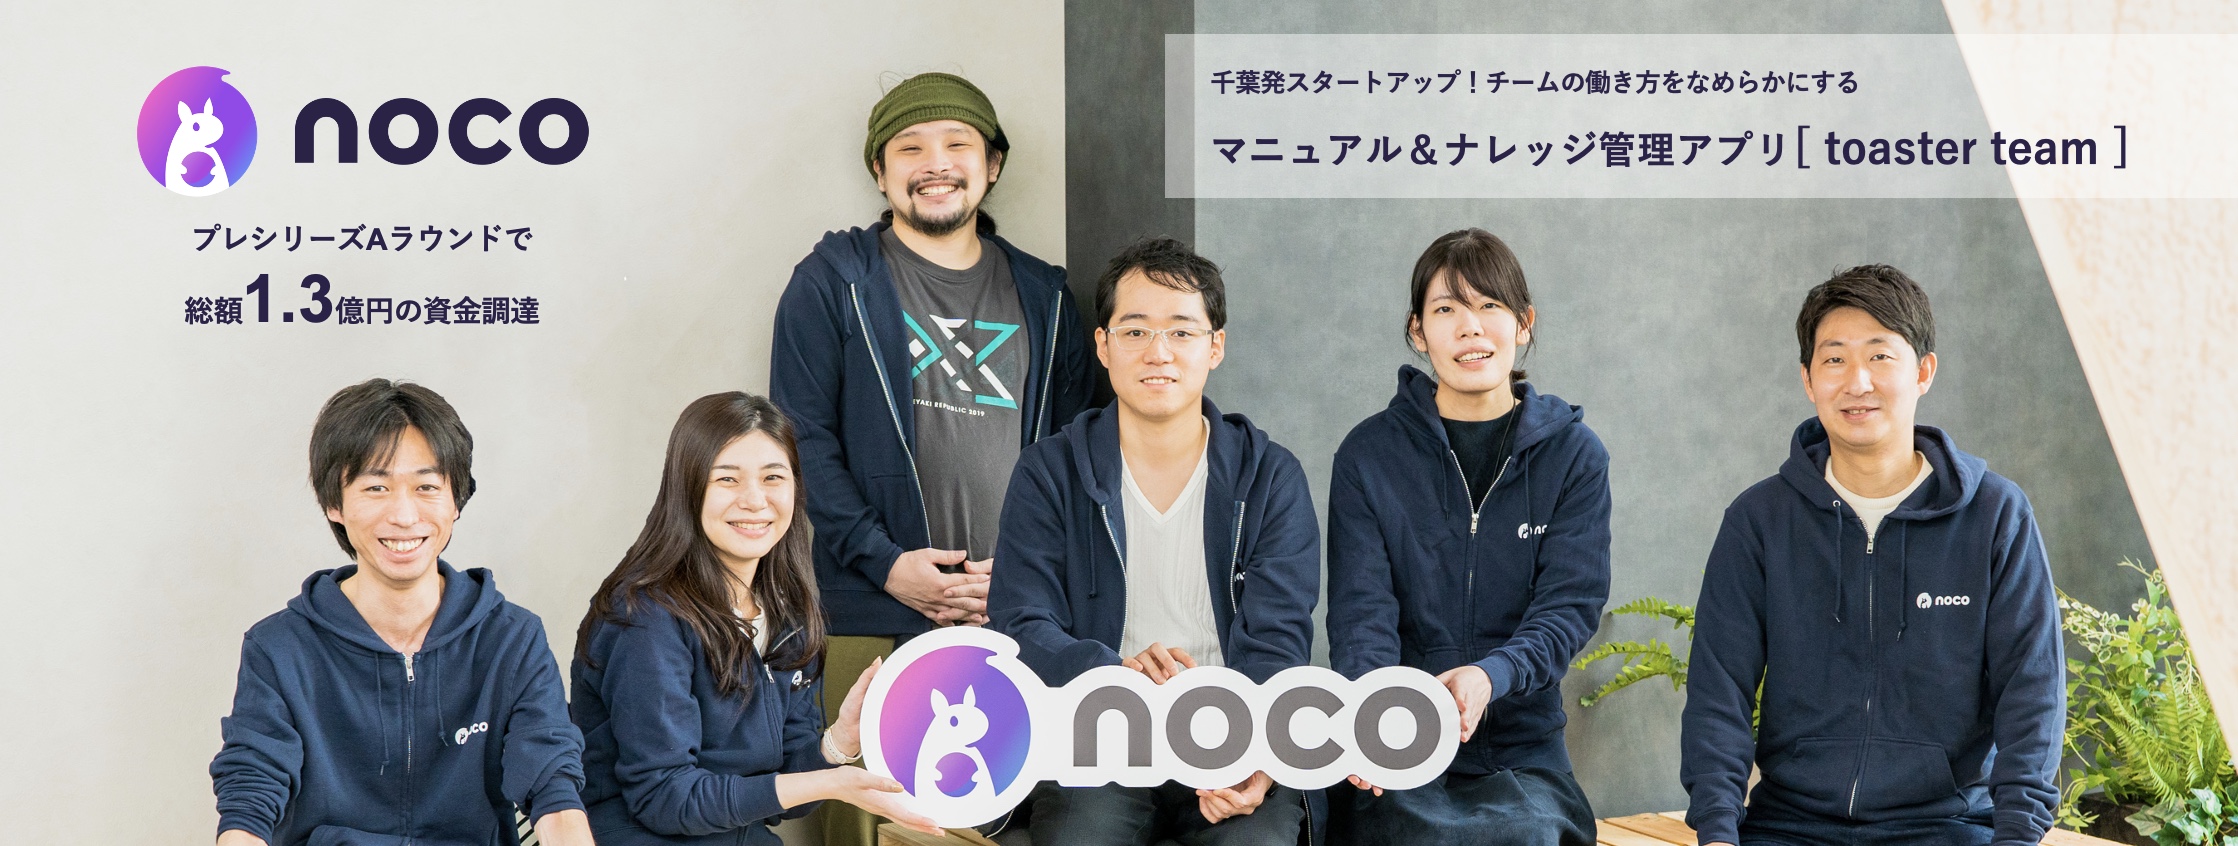 noco株式会社導入事例